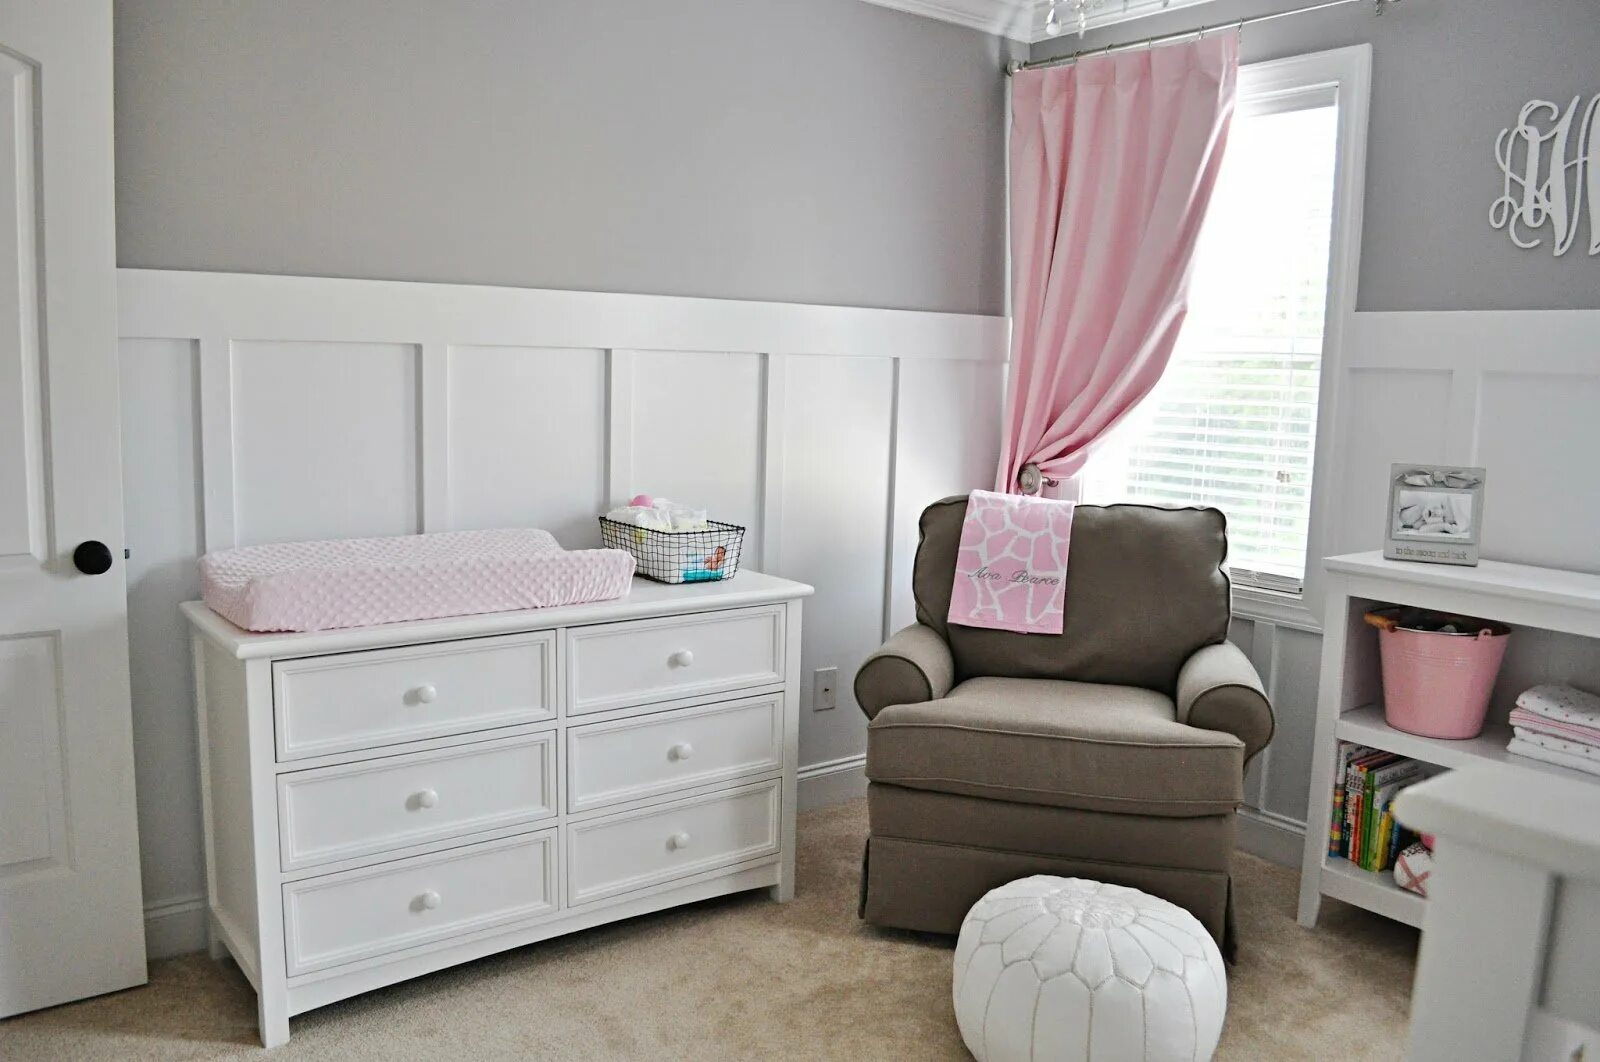 Серо розовая комната. Детская в серо розовых тонах. Детская в розовых тонах с белой мебелью. Серо розовая комната для девочки. Детская комната в серо-розовых тонах.